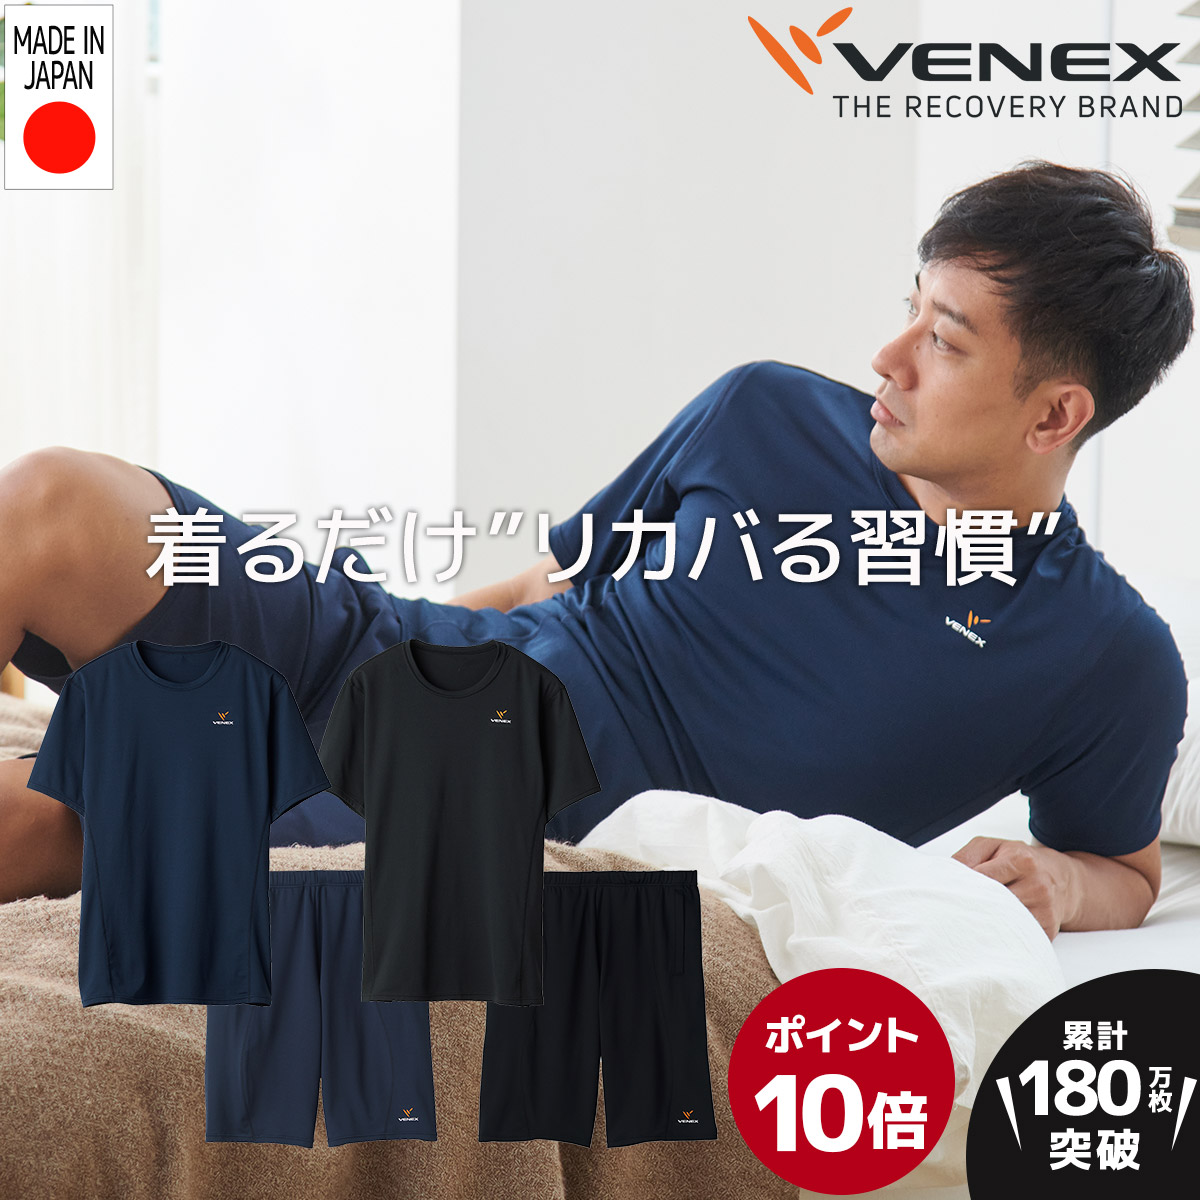 大特価 お買い物マラソン期間限定P10倍 VENEX 上下セット半袖 Tシャツ